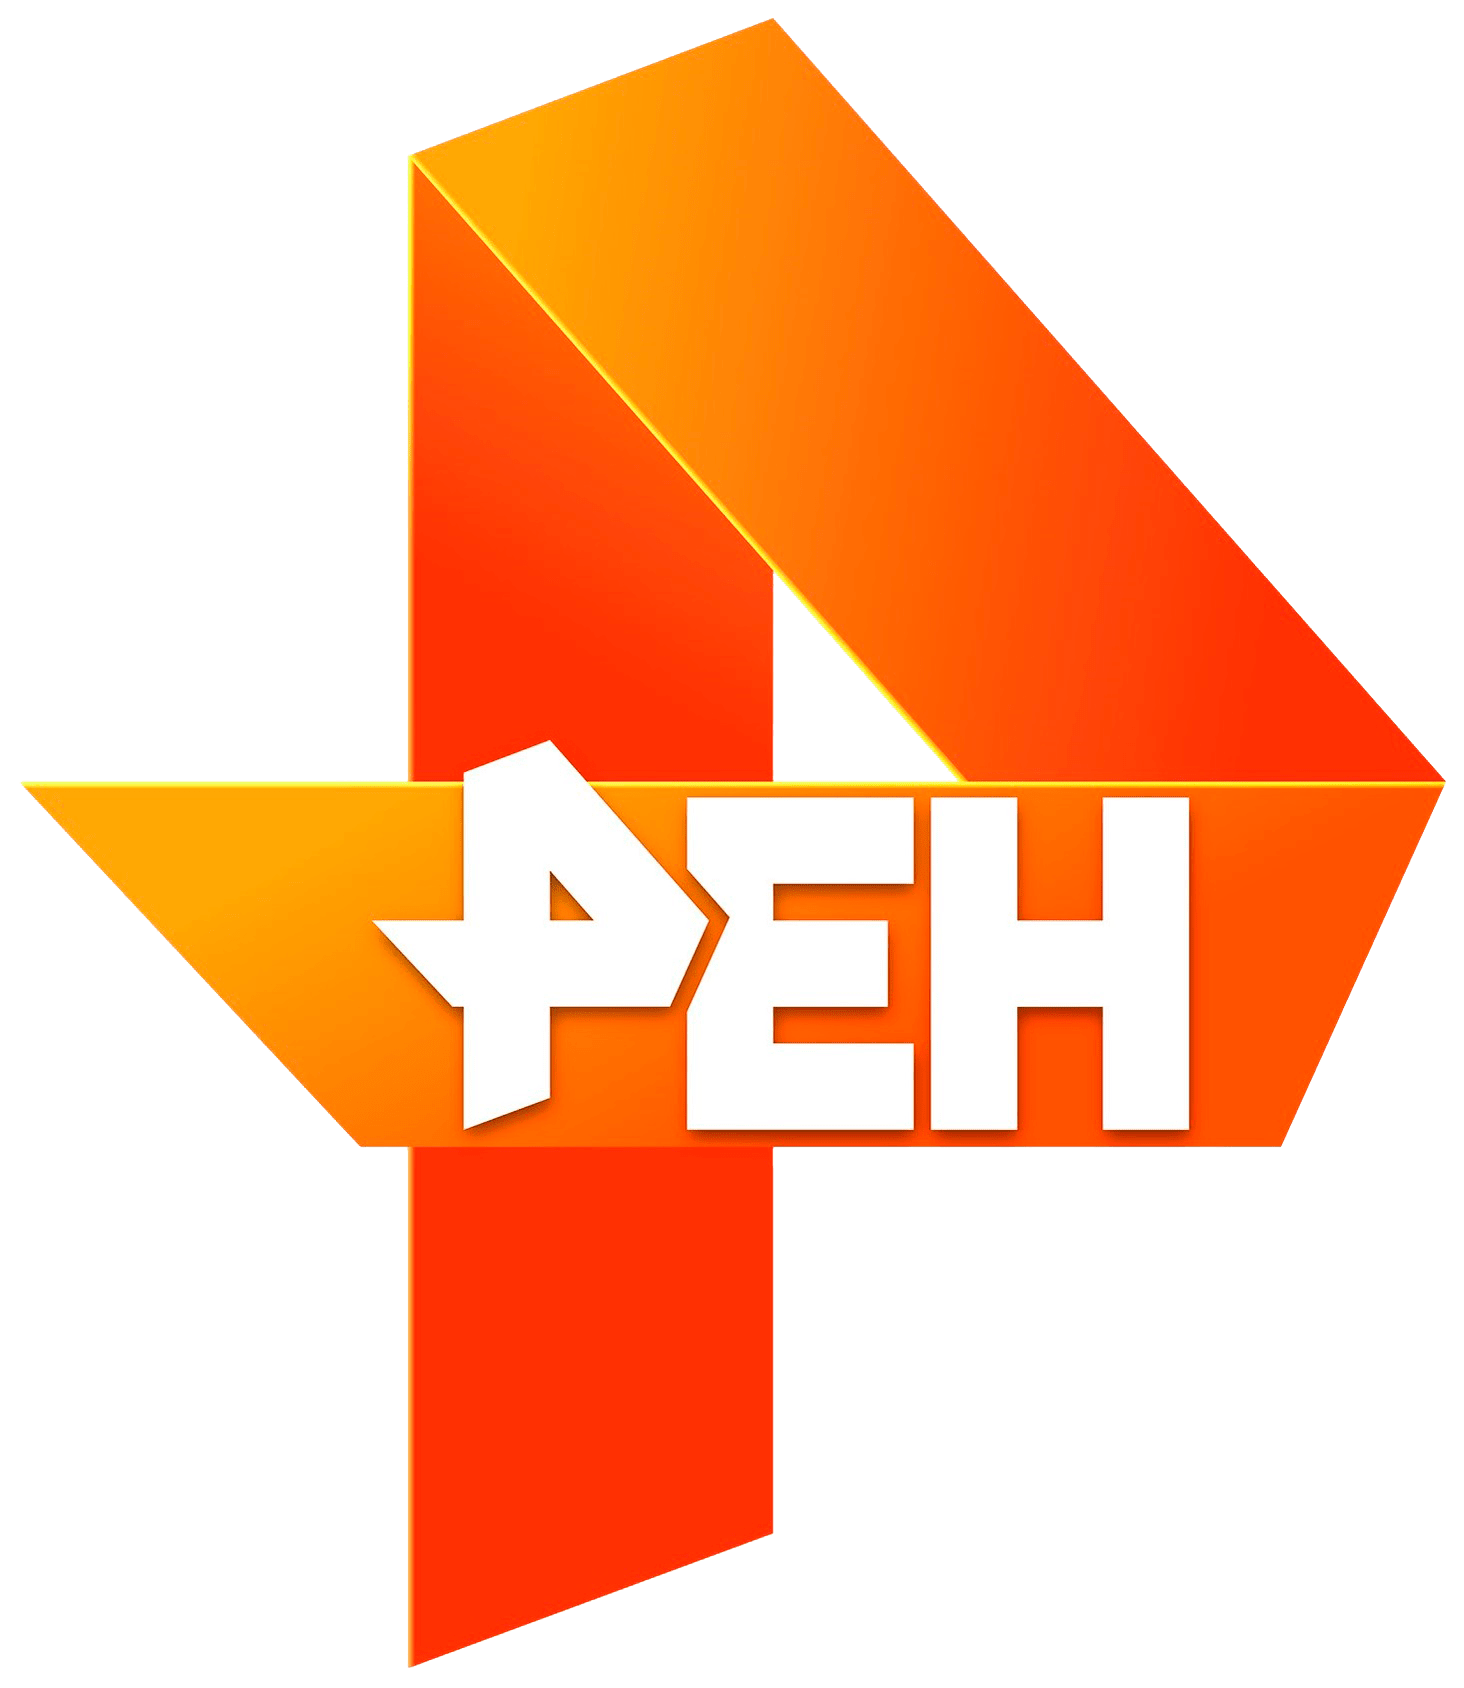 Раземщение рекламы РЕН ТВ, г. Казань